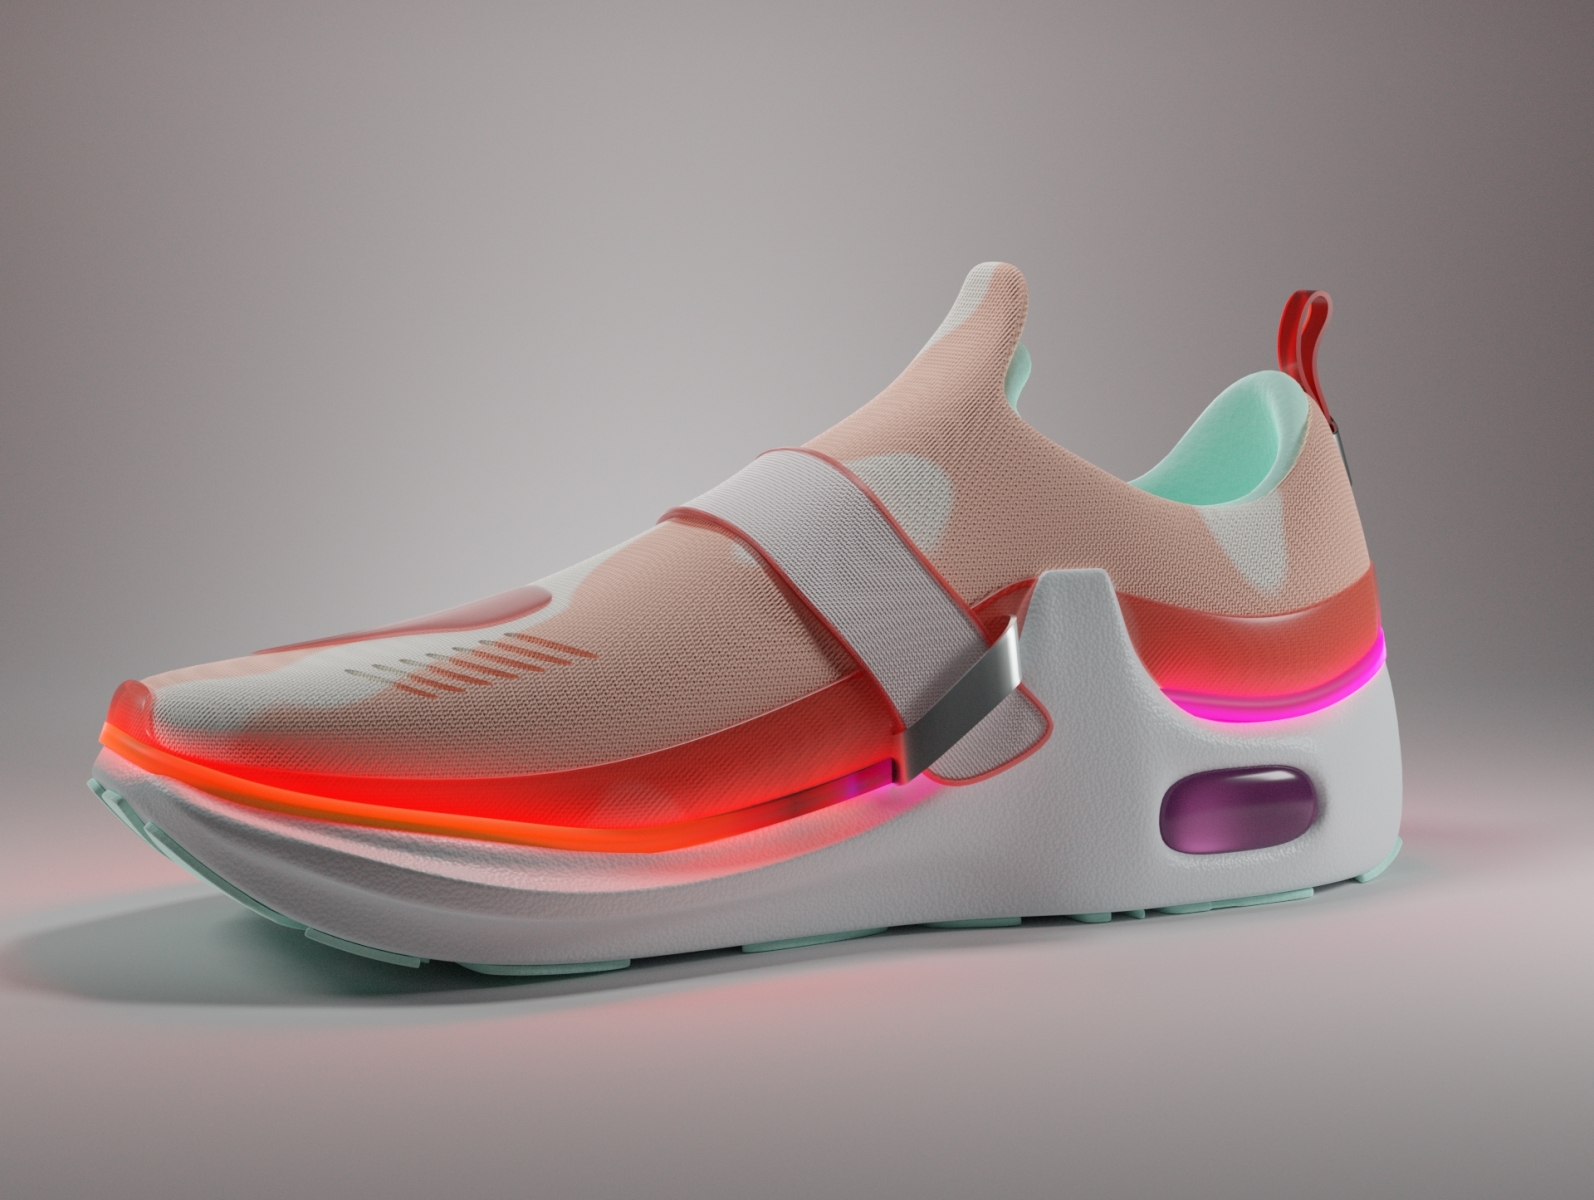 3D Footwear Design by Tony Mamulea on Dribbble